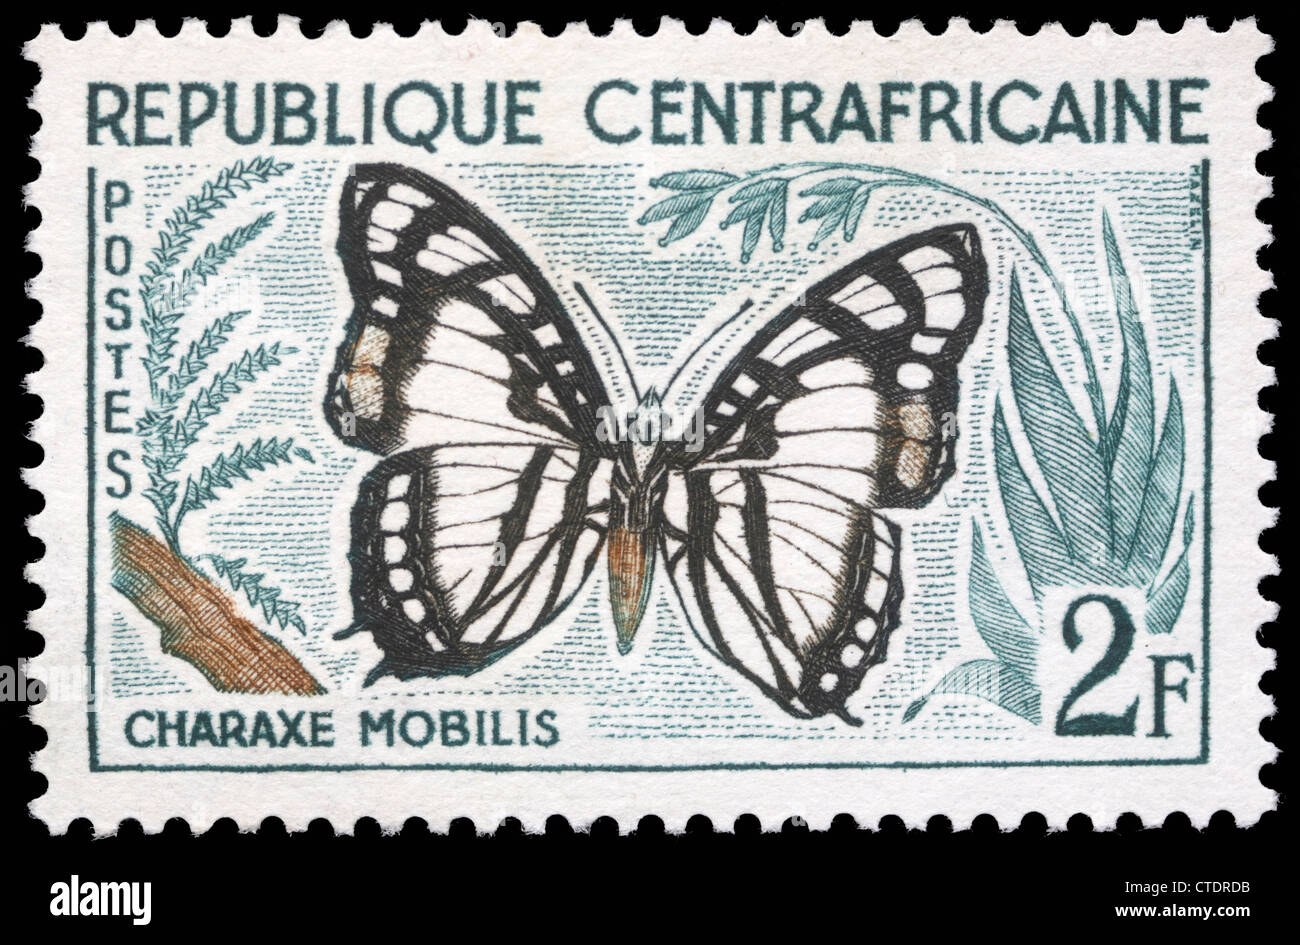 République centrafricaine - circa 1960:un timbre imprimé en République centrafricaine montre un papillon, Charaxe Mobilis, vers 1960 Banque D'Images